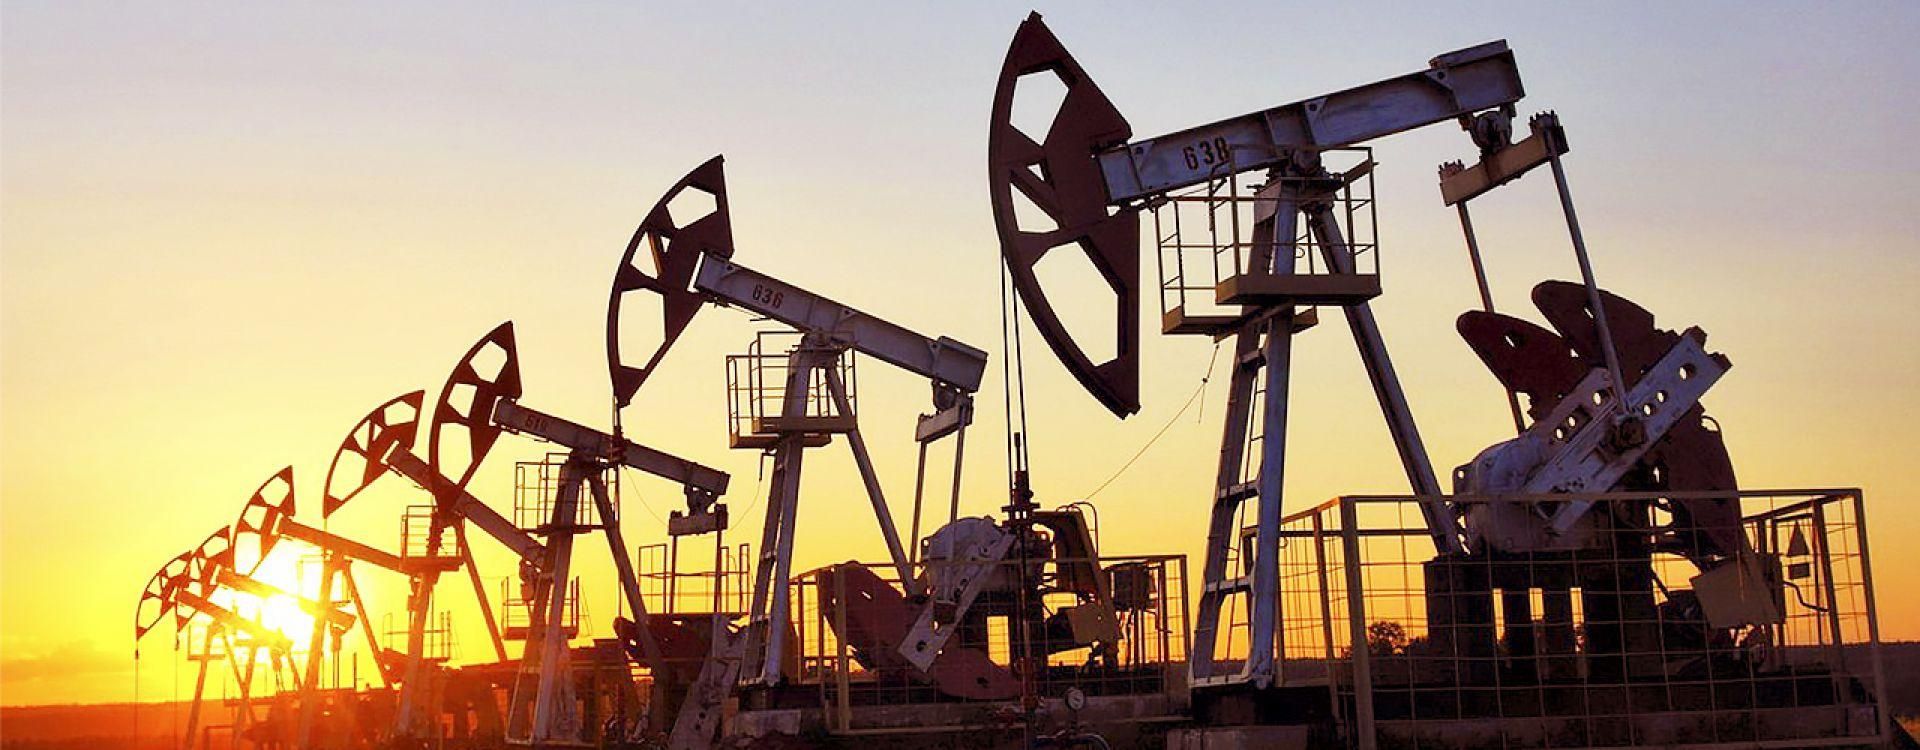 Новости из США подняли цену нефти на мировом рынке